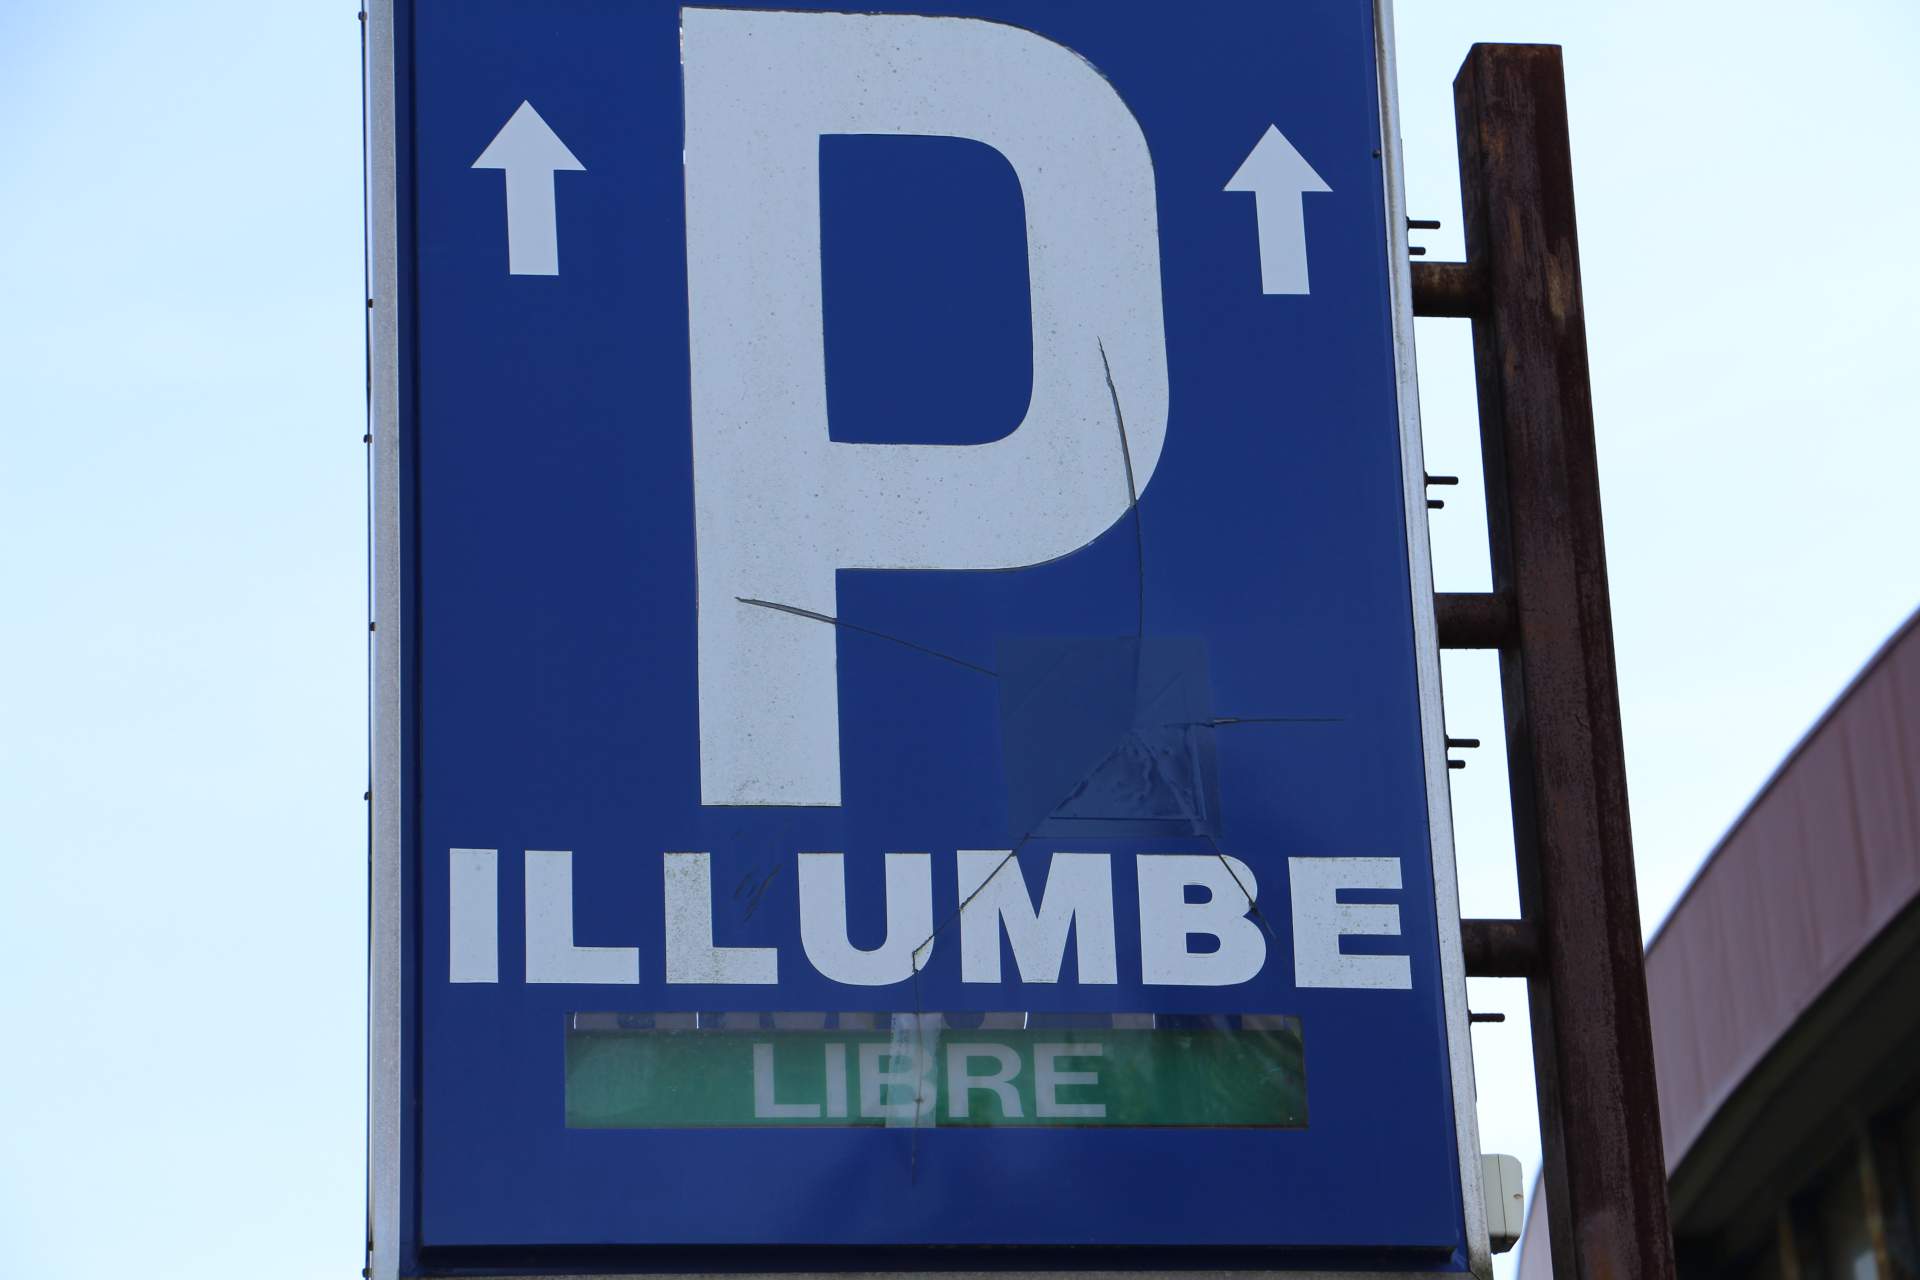 Illumbe San Sebastian